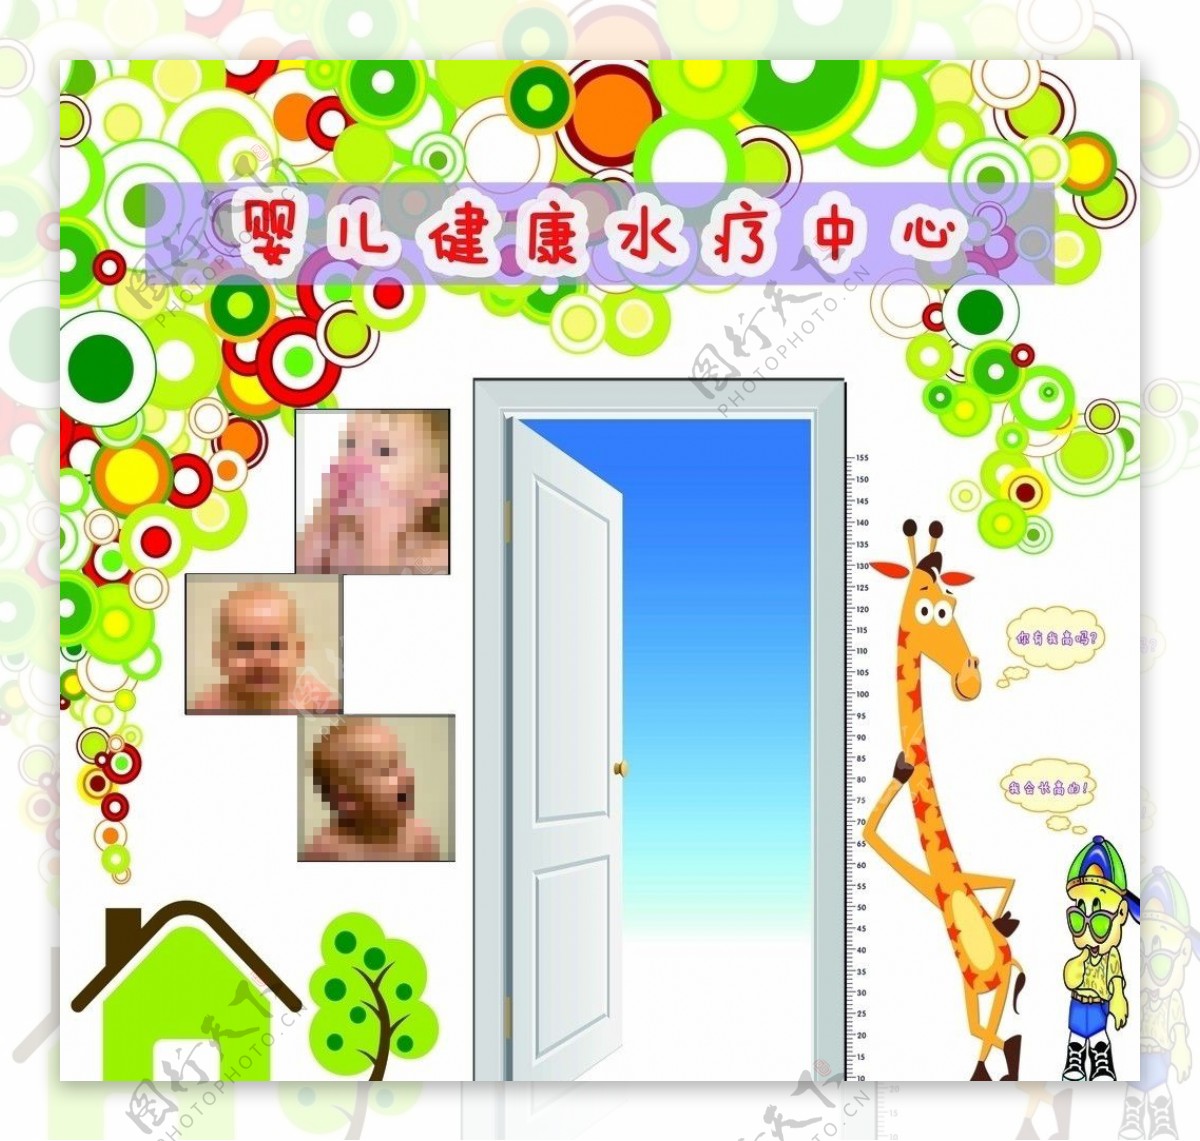 婴儿水疗门面设计图片